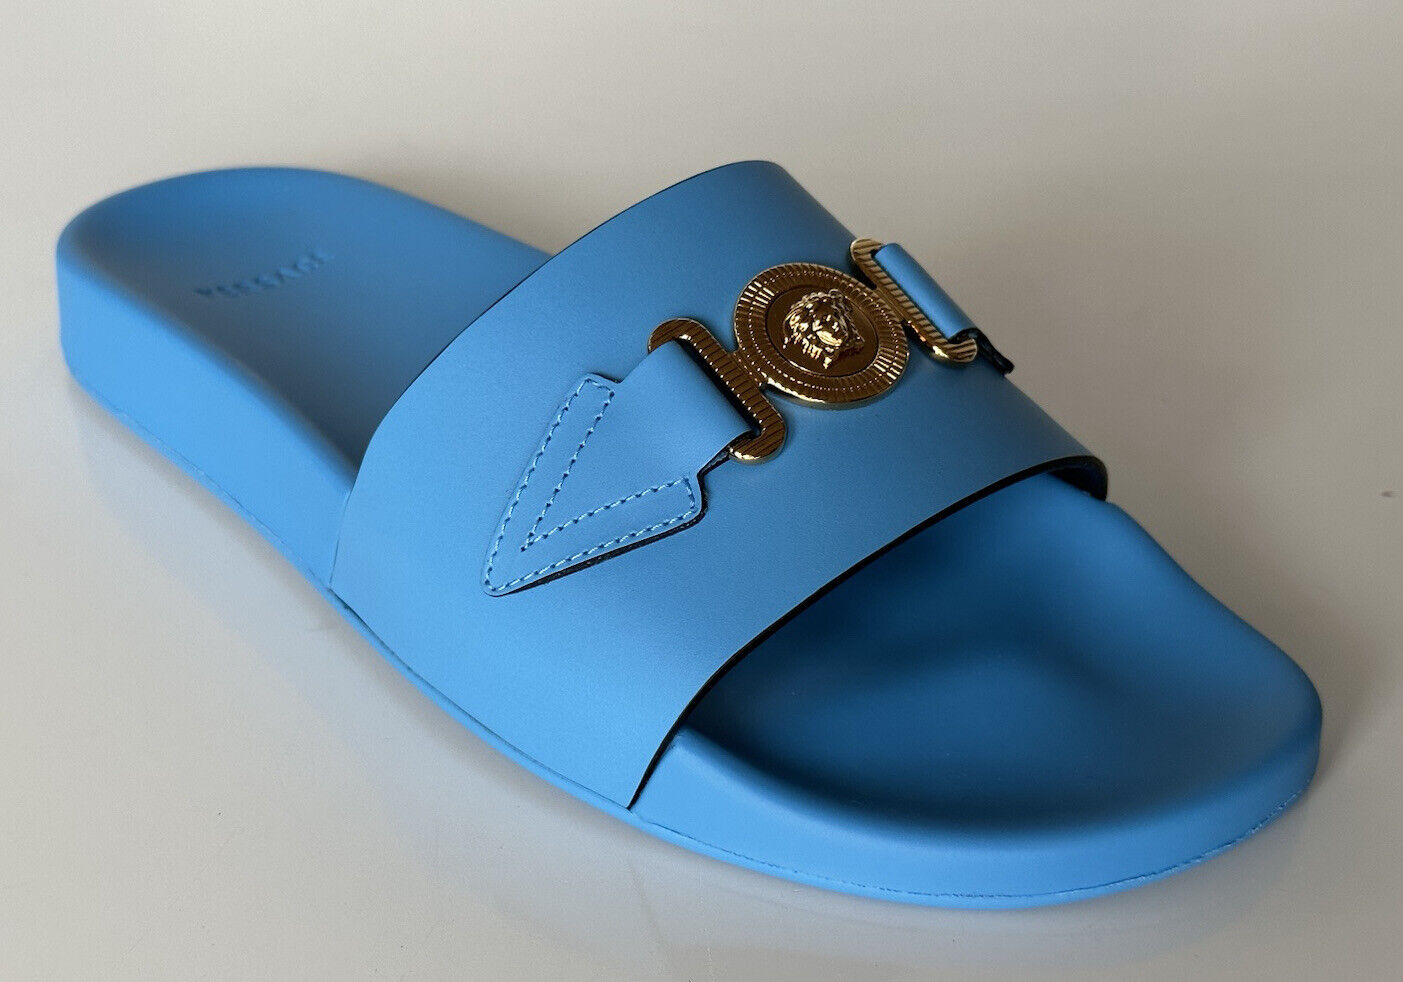 NIB 575 долларов США Versace Gold Medusa Кожаные/резиновые сандалии Синие 10,5 (43,5) 1004983 IT